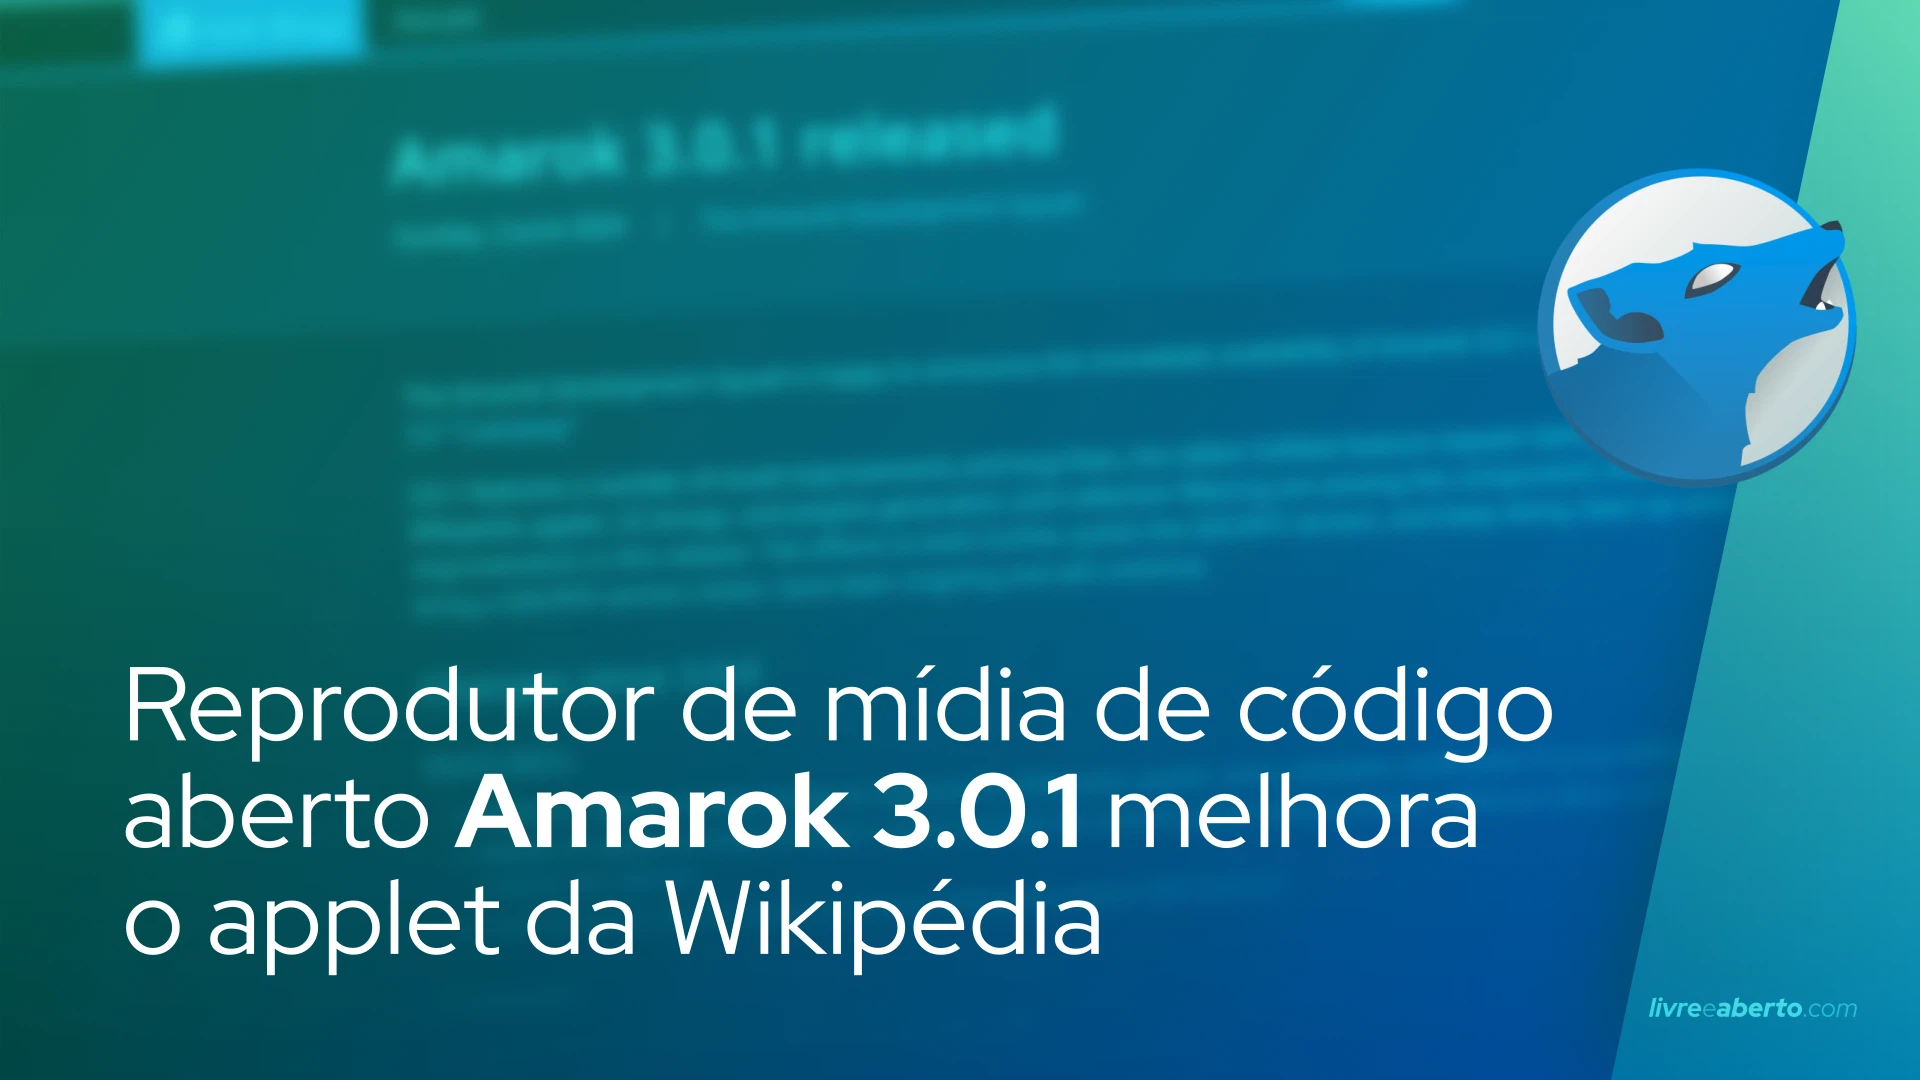 Reprodutor de mídia de código aberto Amarok 3.0.1 melhora o applet da Wikipédia